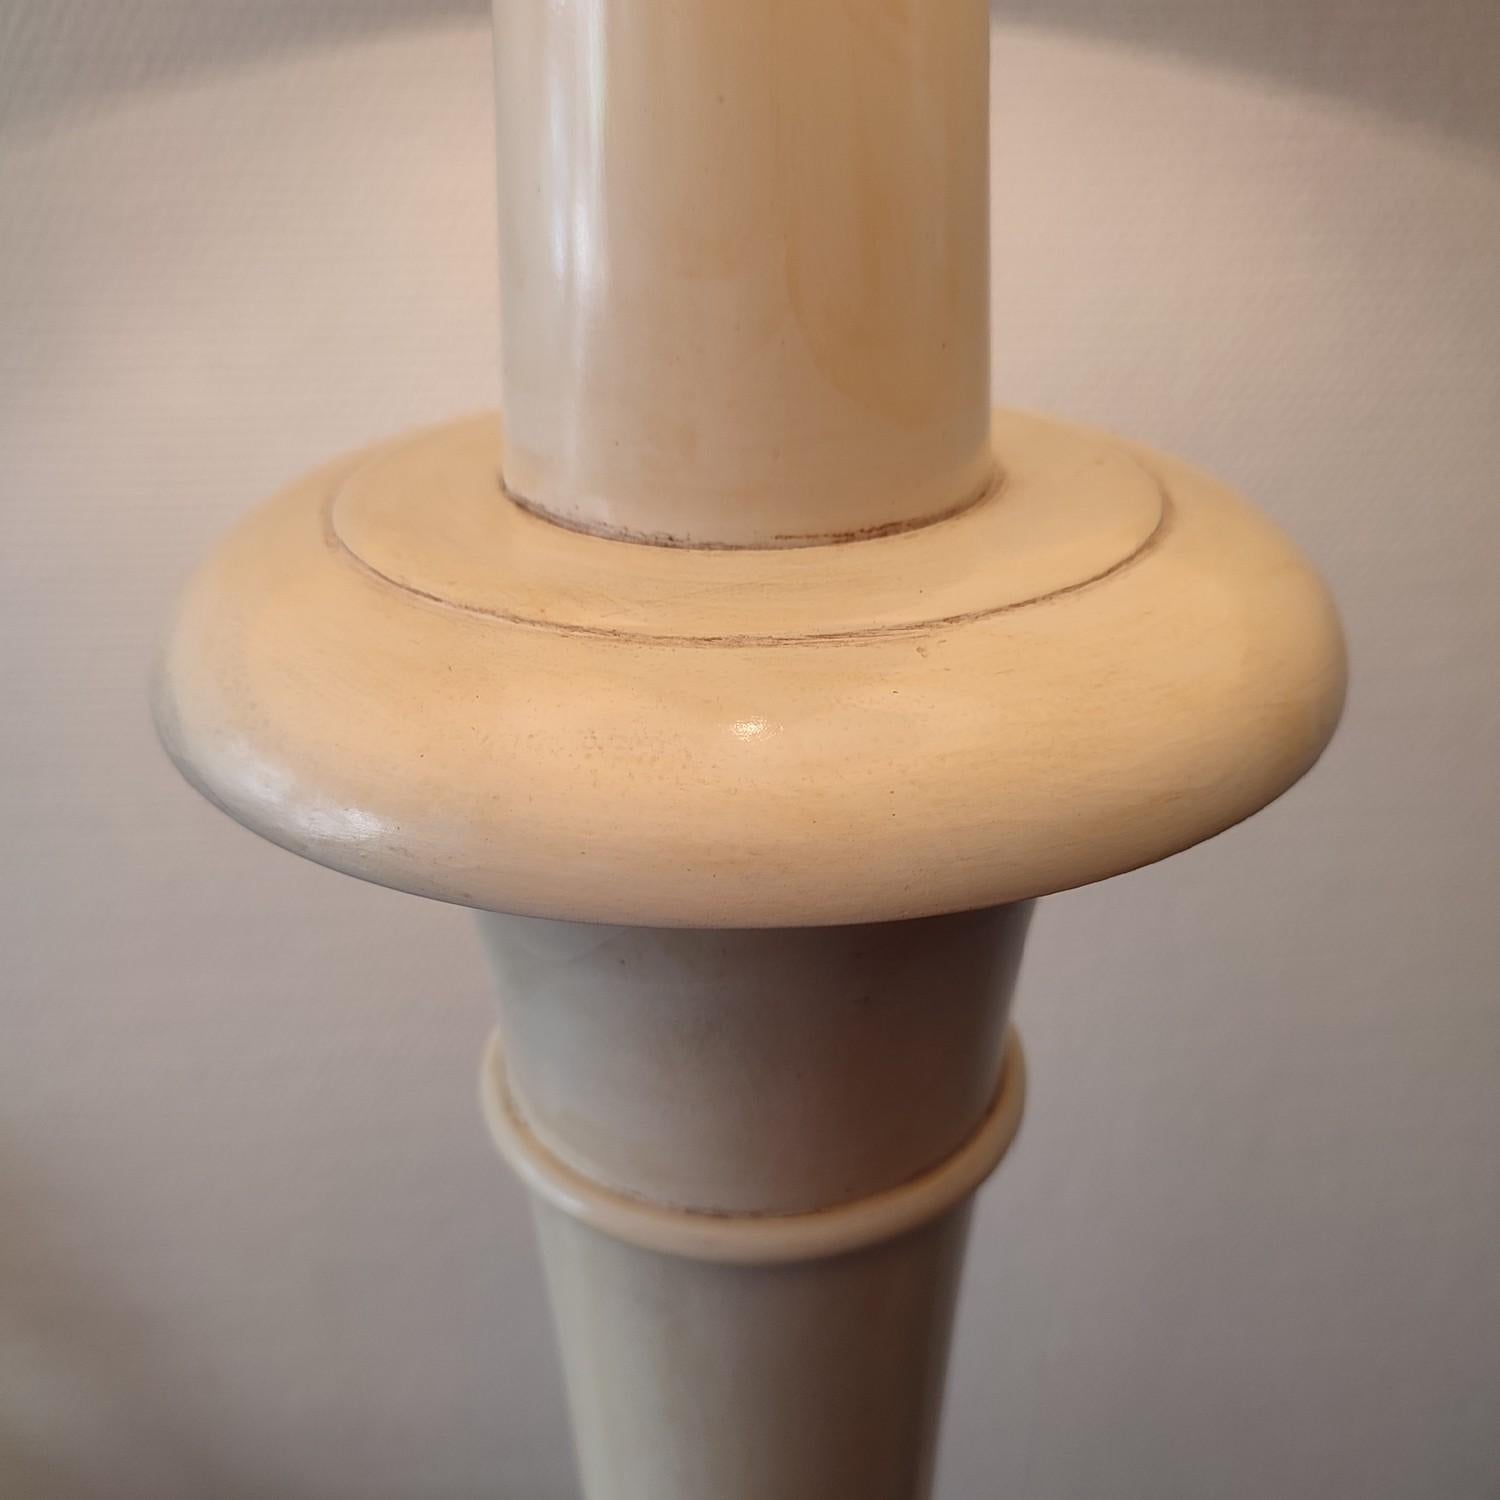 Elégant lampadaire laqué ivoire des années 1950 en France. Sa hauteur (155 cm jusqu'à la douille) en fait un objet très élégant. Remis à neuf et belle finition.